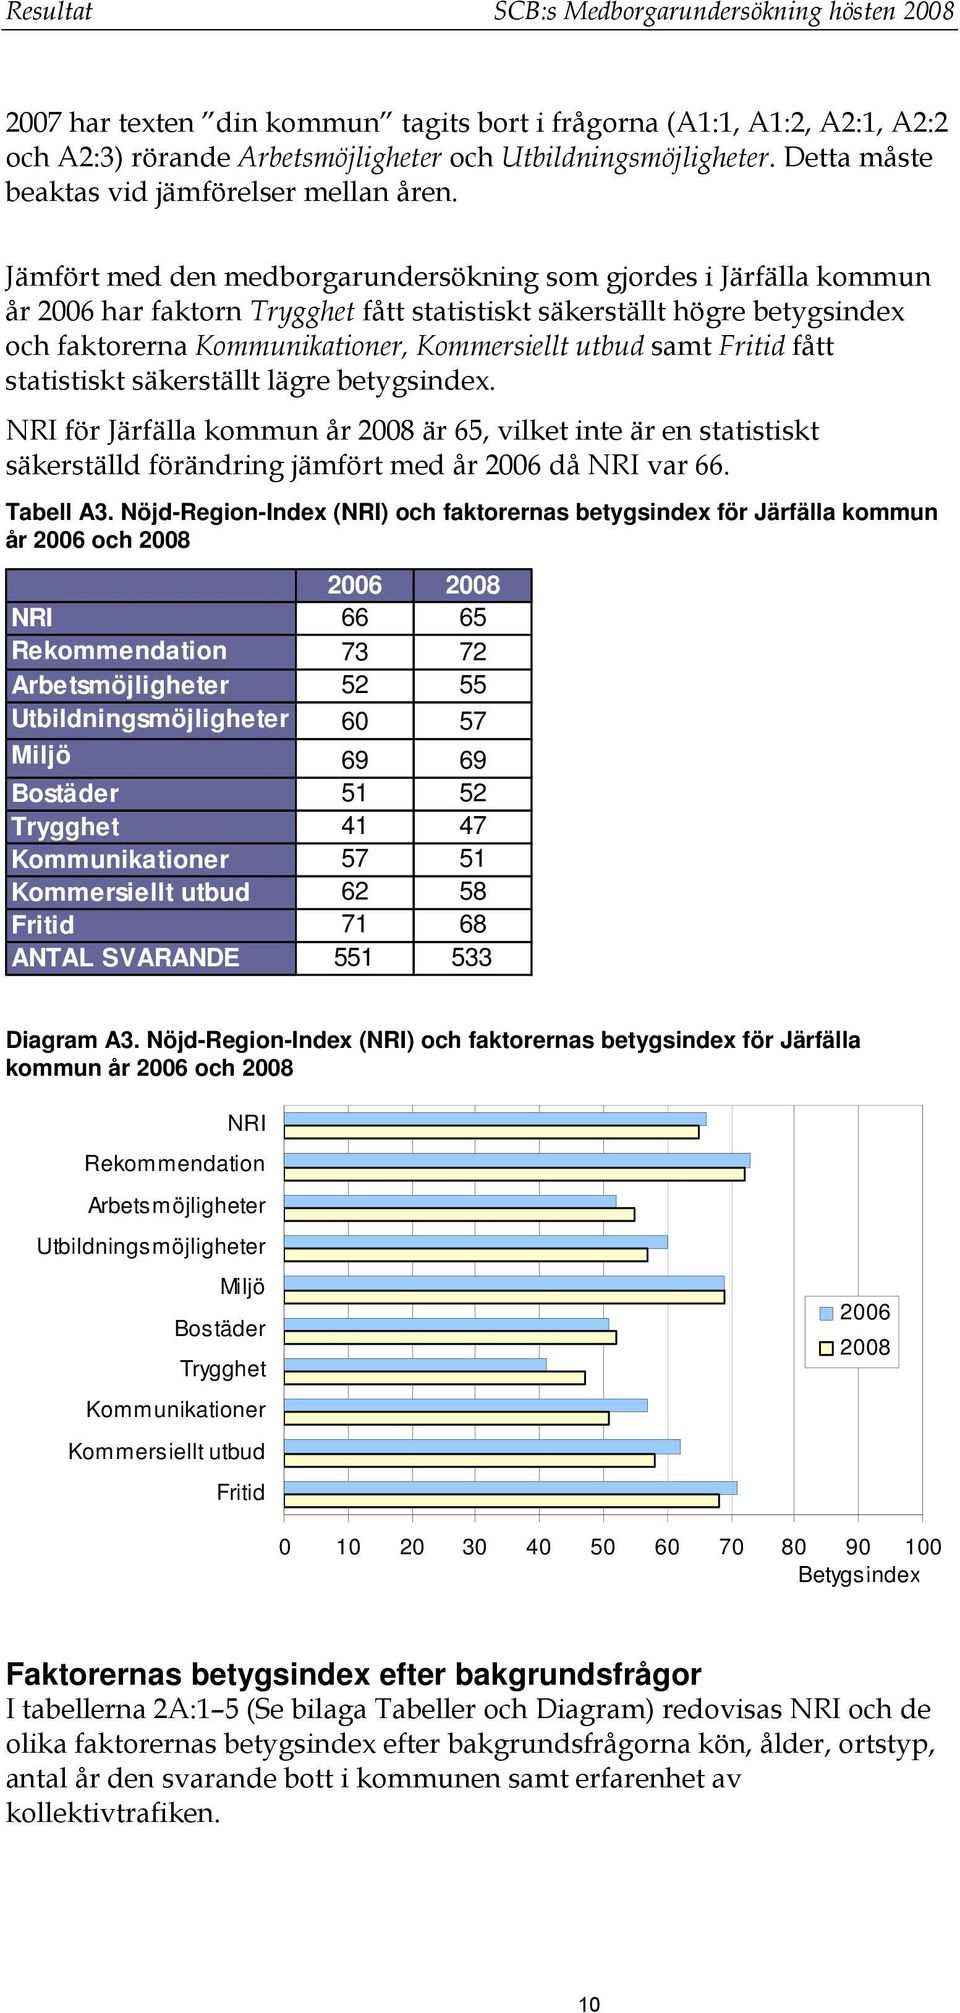 Jämfört med den medborgarundersökning som gjordes i Järfälla kommun år 2006 har faktorn Trygghet fått statistiskt säkerställt högre betygsindex och faktorerna Kommunikationer, Kommersiellt utbud samt